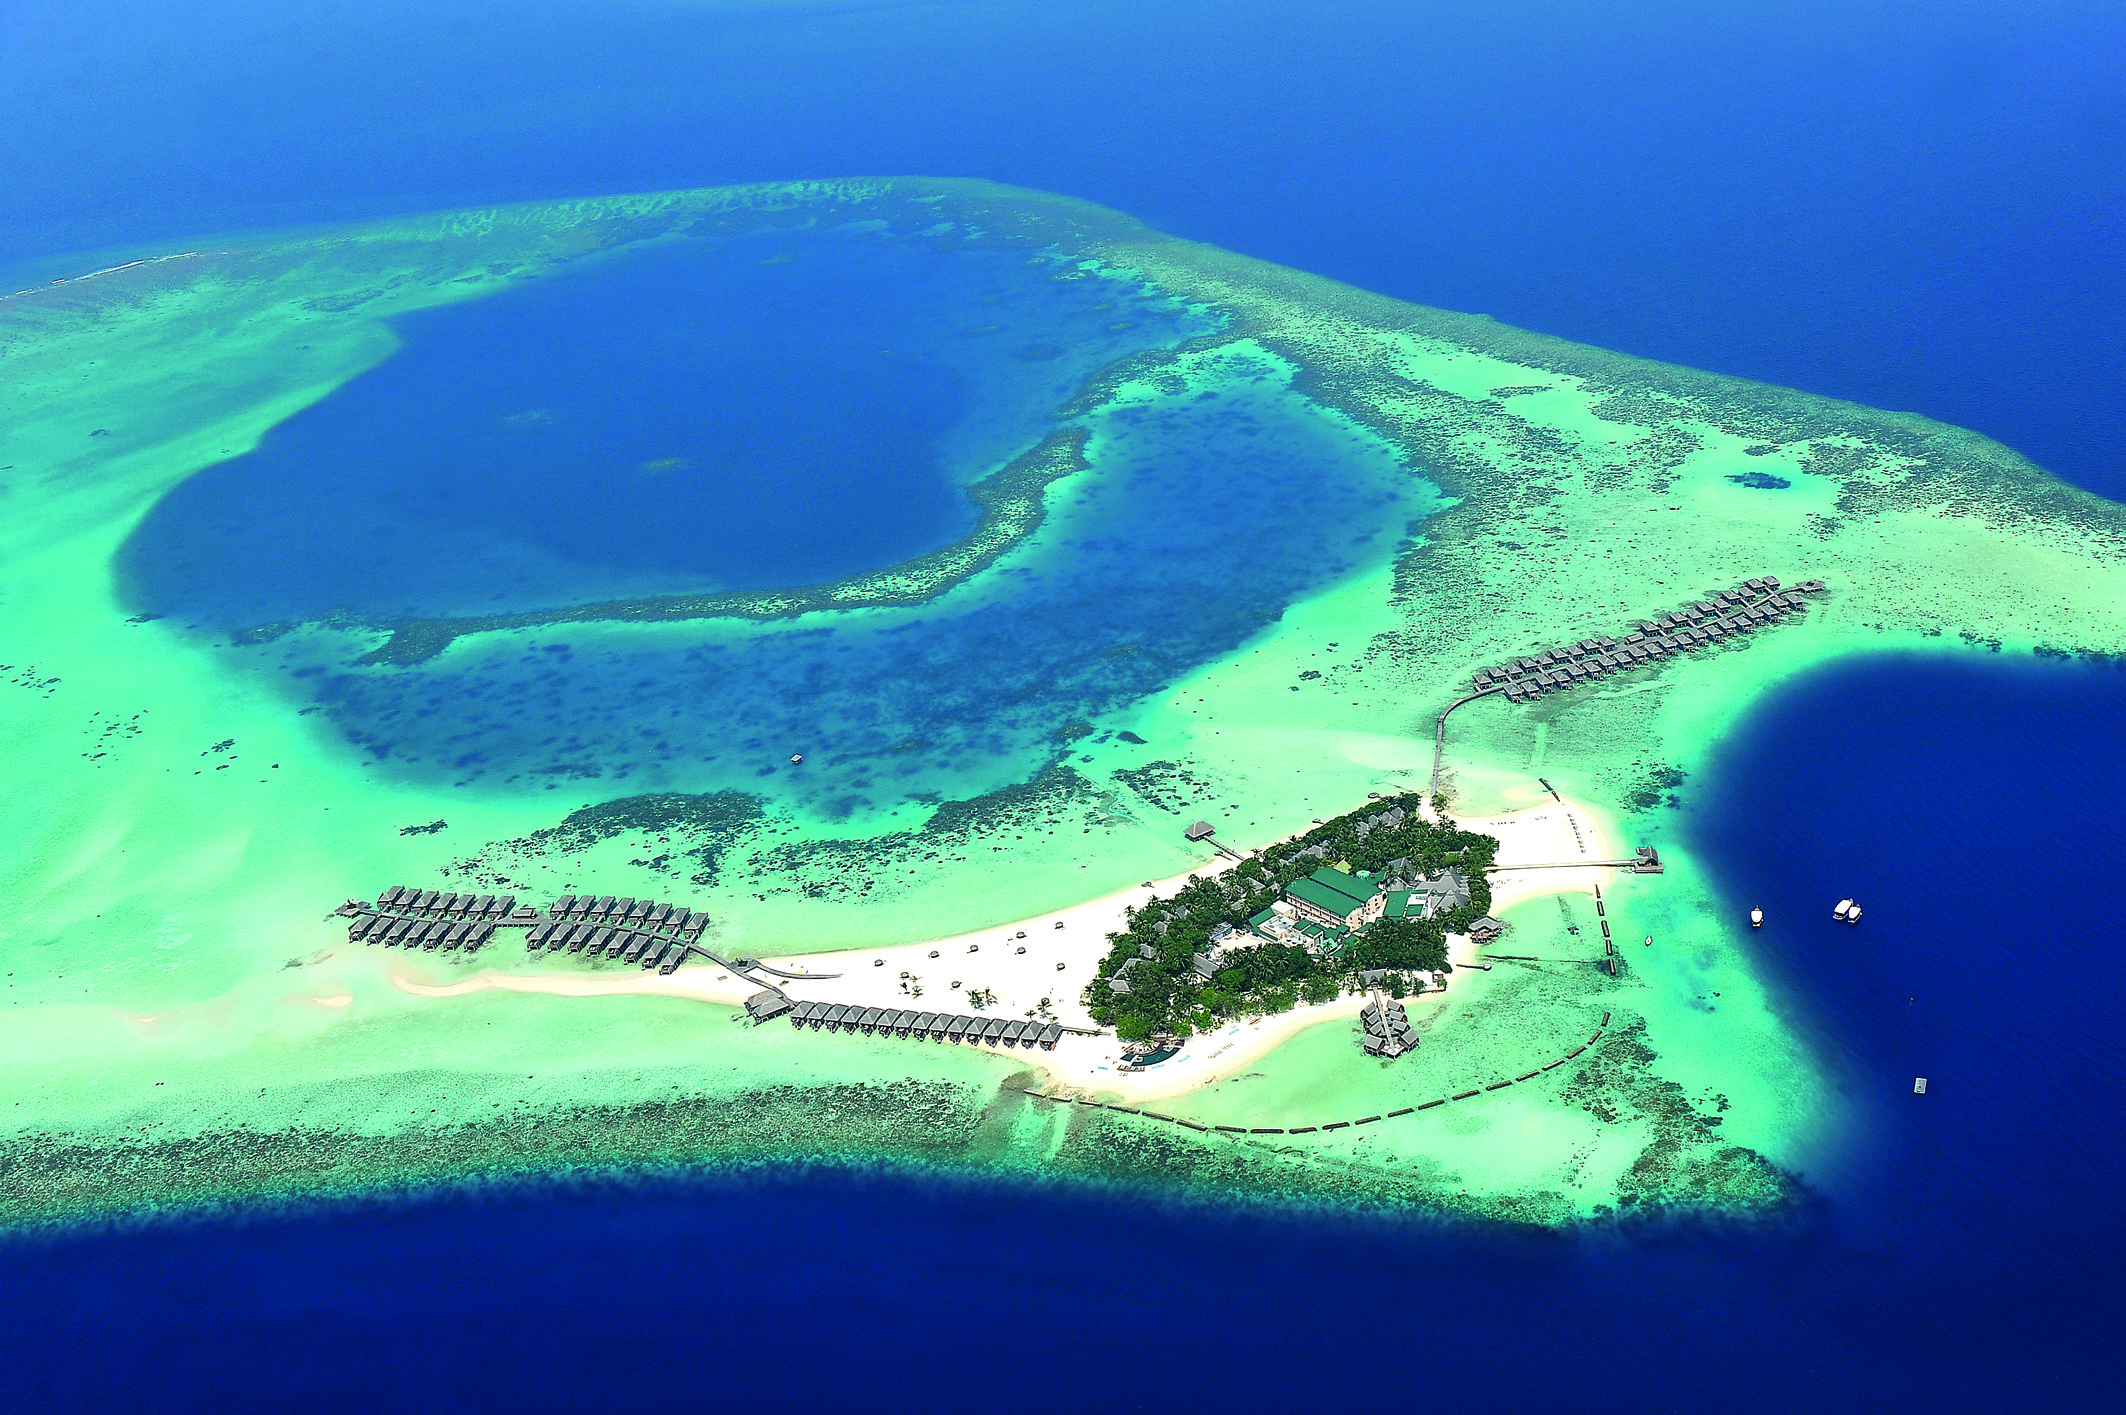 Moofushi Maldive